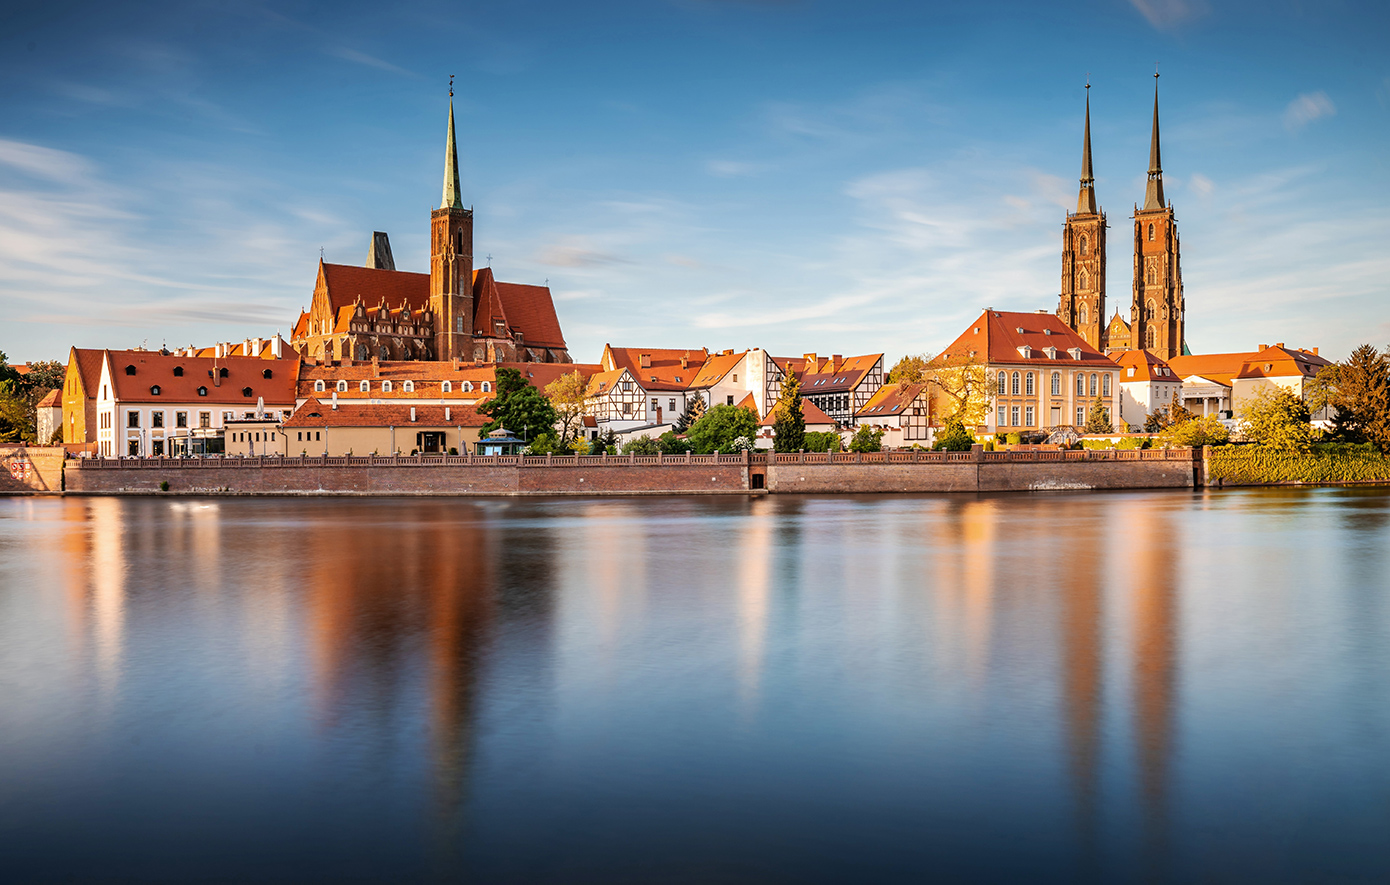 Η Πολωνία έχει την κατάλληλη πόλη για να ζήσεις το δικό σου παραμύθι